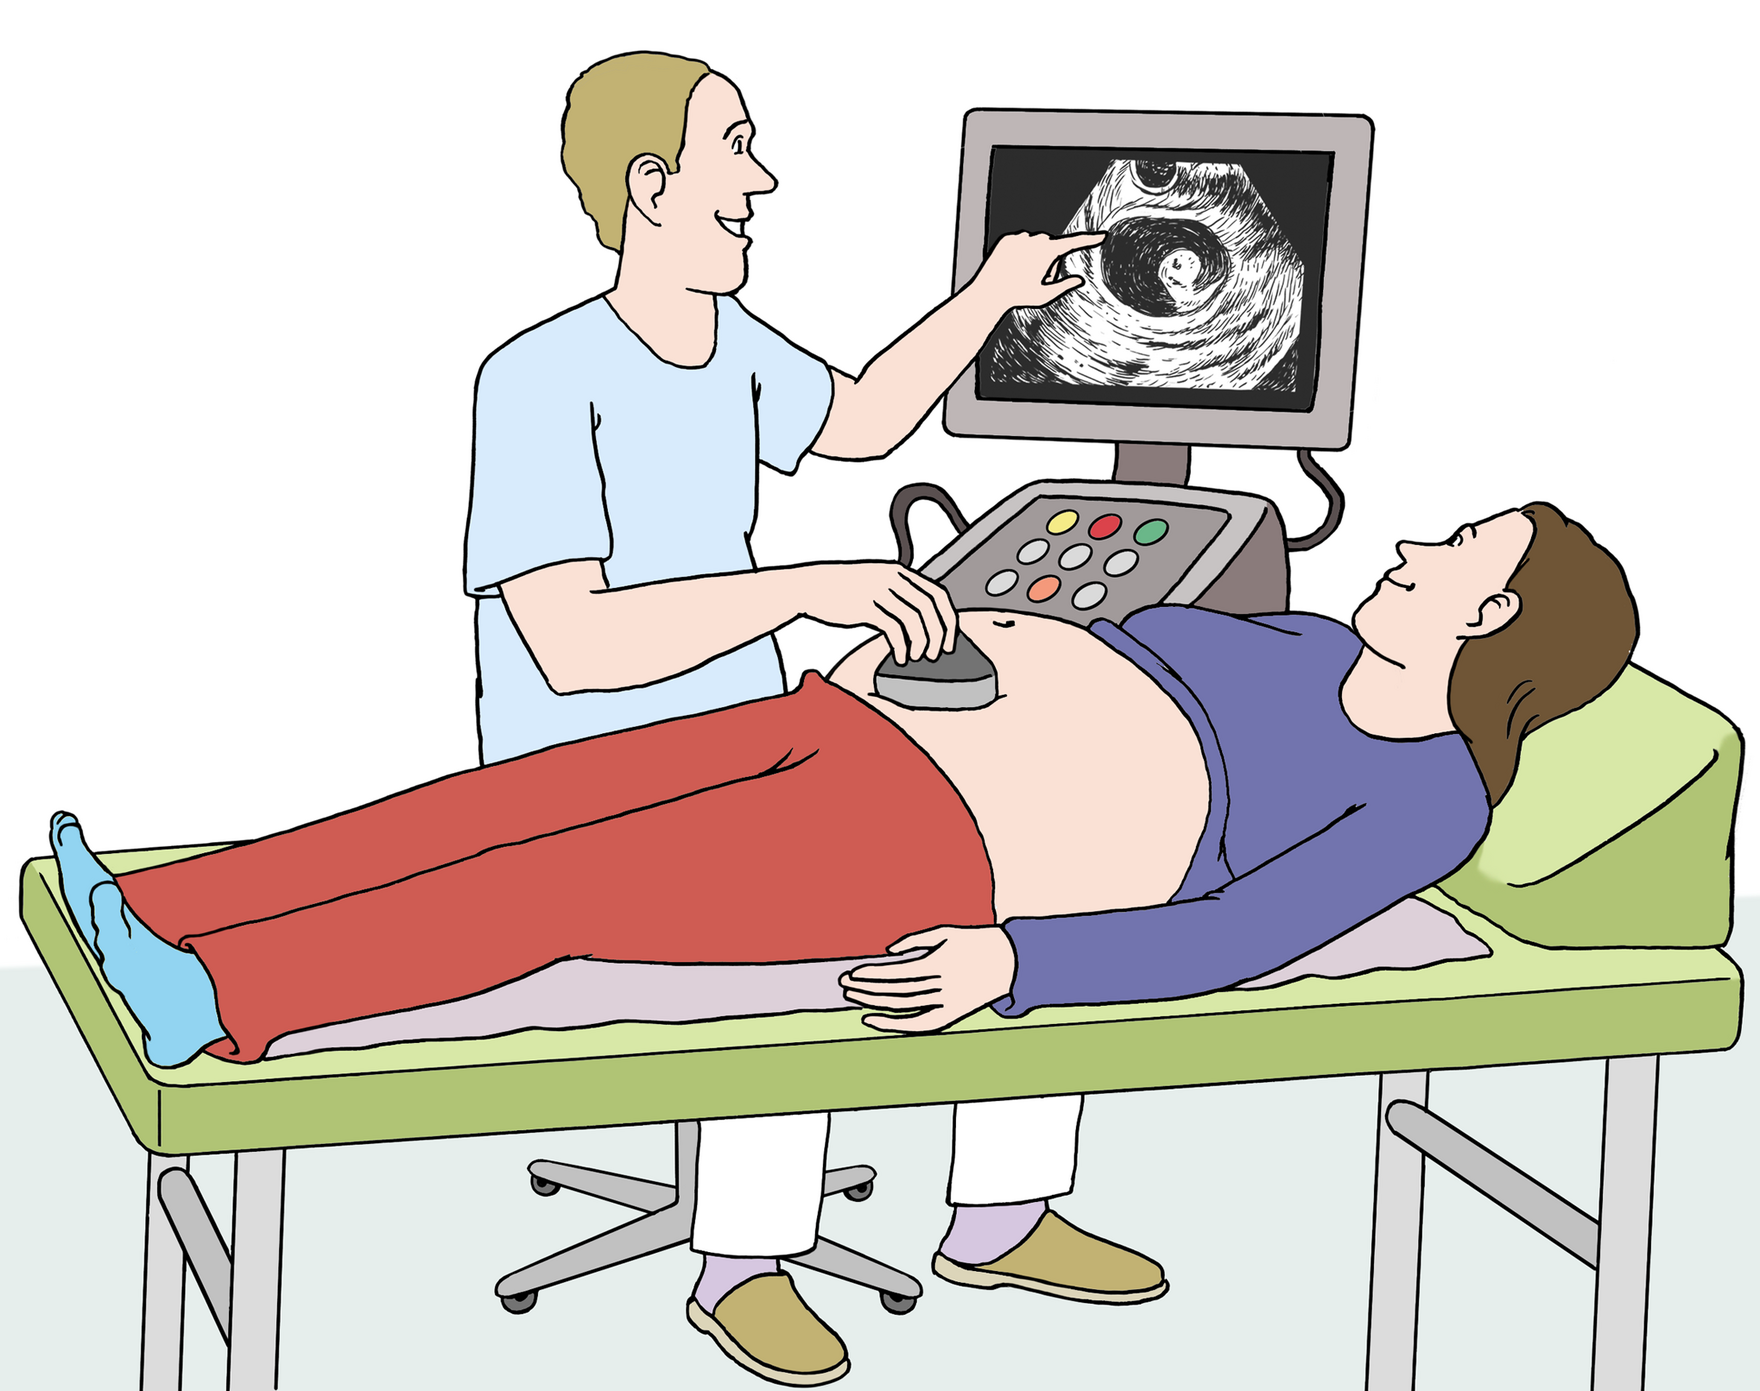 Grafik: Frau liegt beim Frauenarzt auf der Liege, es wird ein Ultraschall durchgeführt